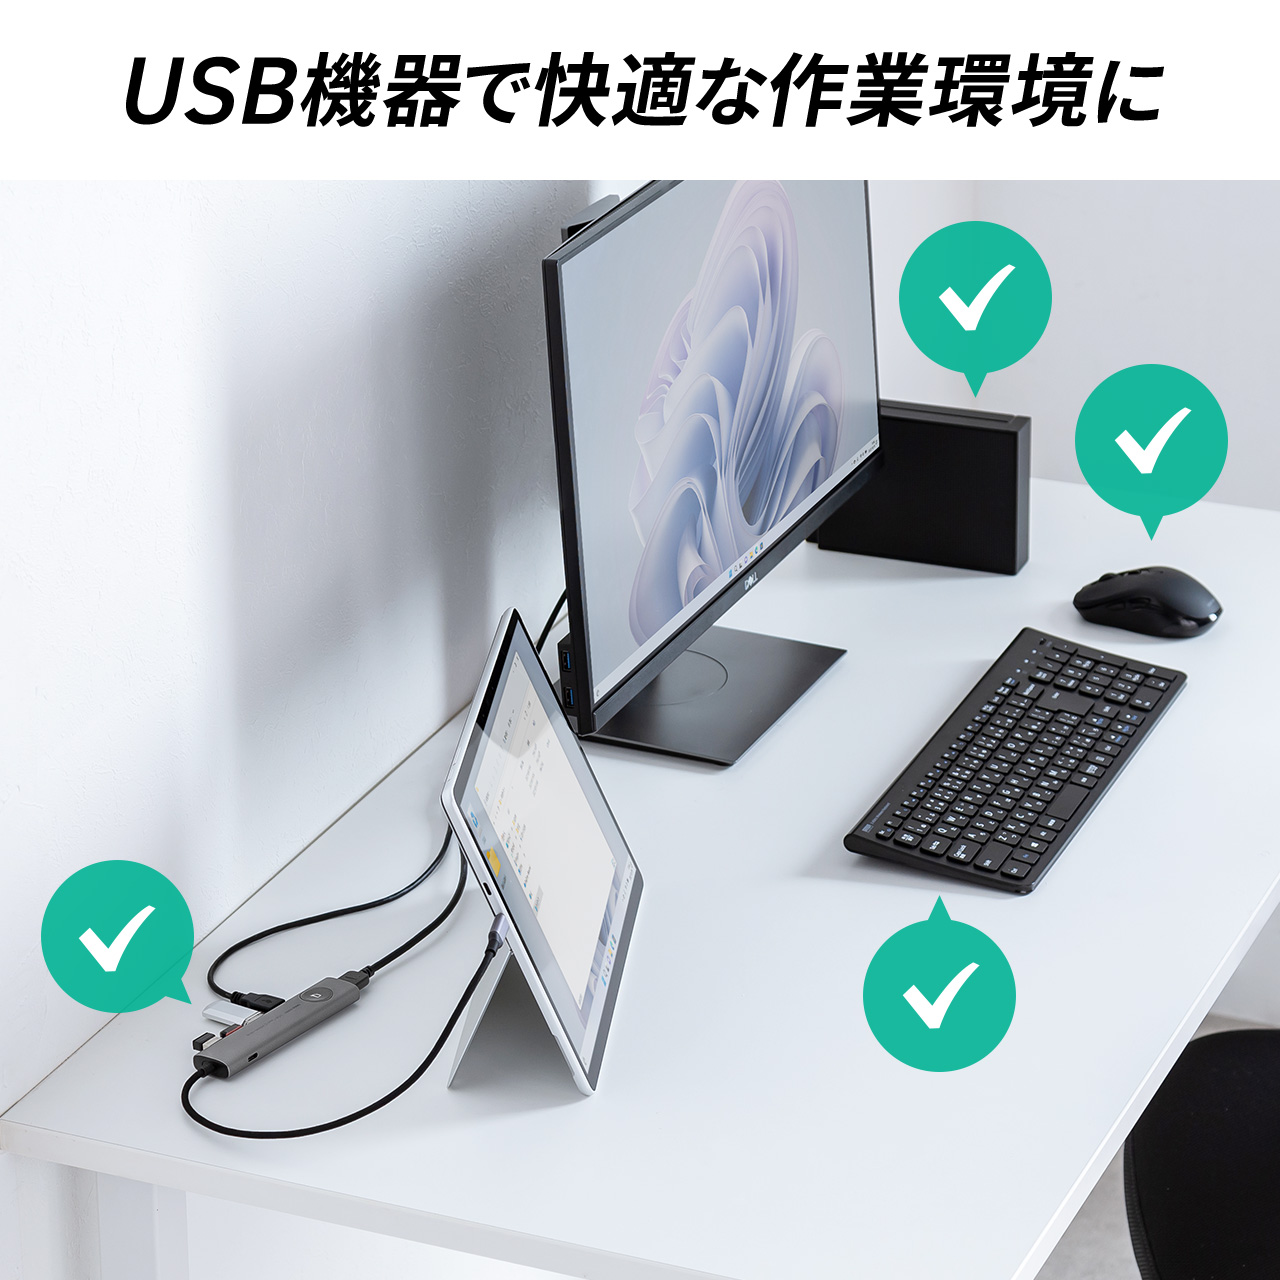 hbLOXe[V USB Type-C ON/OFFXCb`t HDMI 4K/60Hz USB PD100WΉ USB 5Gbps P[ǔ^ oC ^ 400-HUBCP30GM